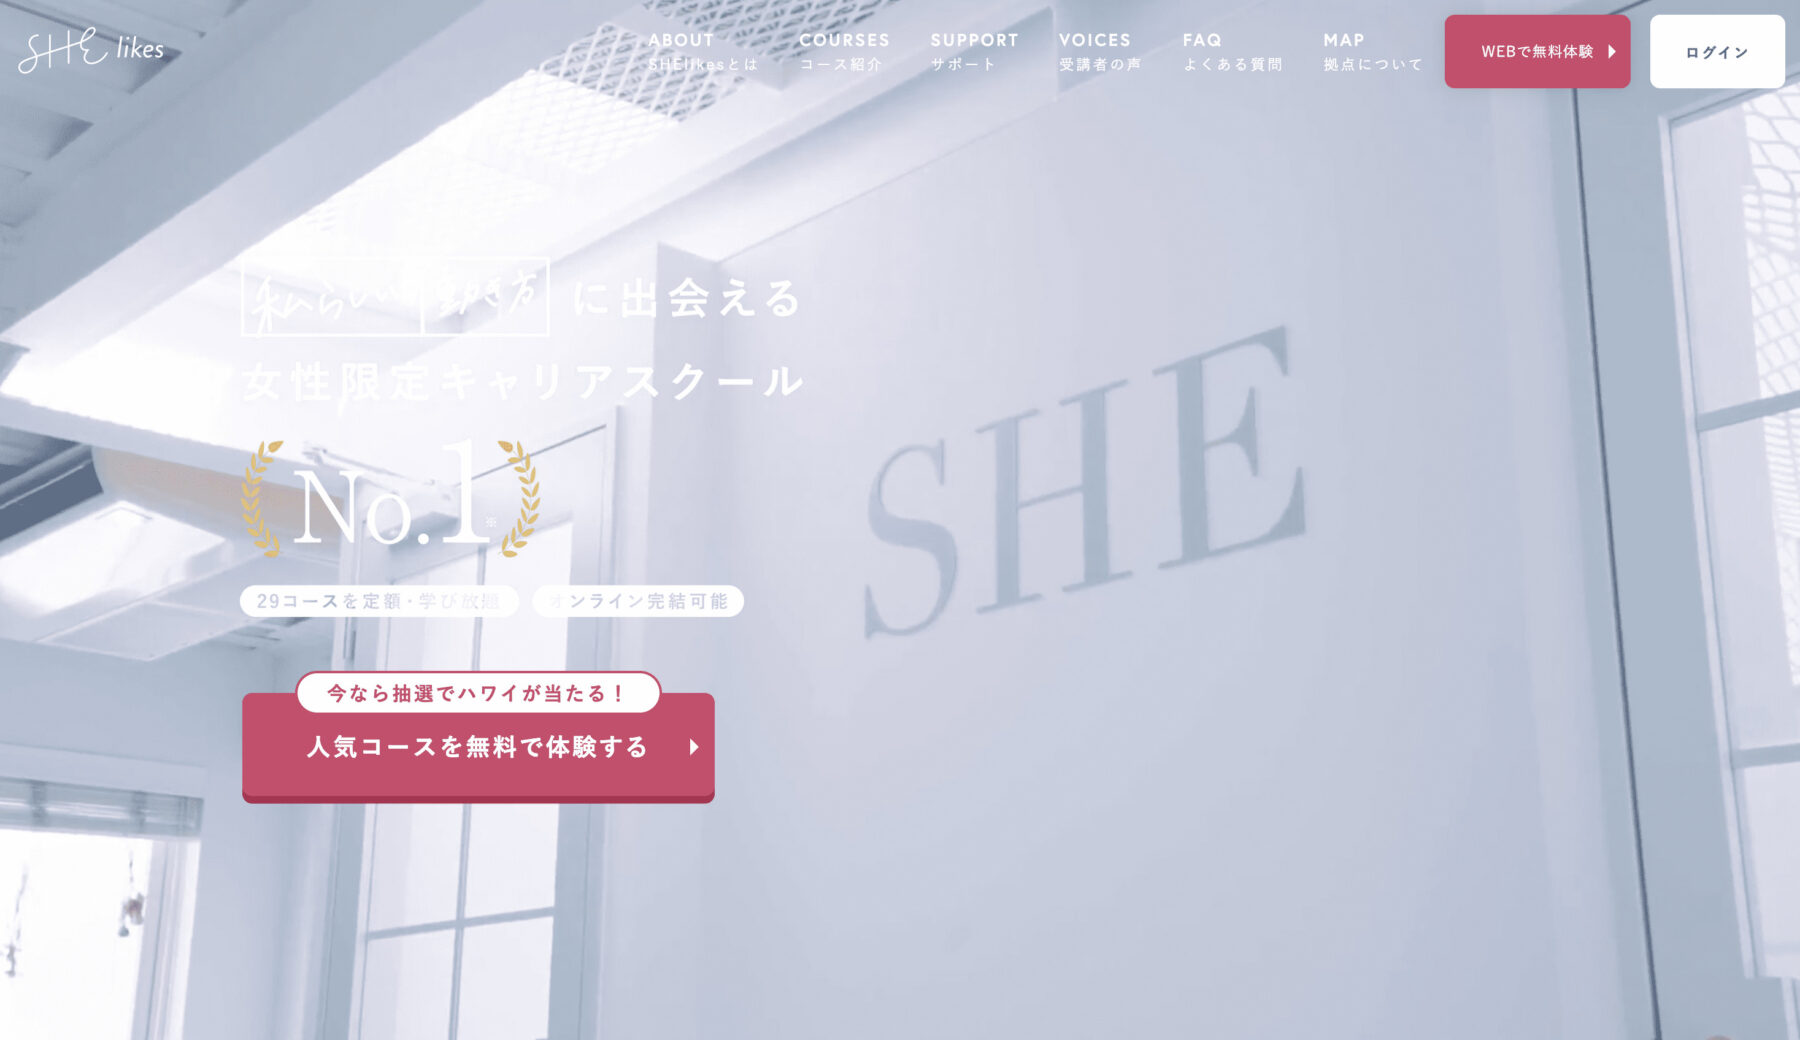 おすすめwebデザインスクール「SHElikes」の画像